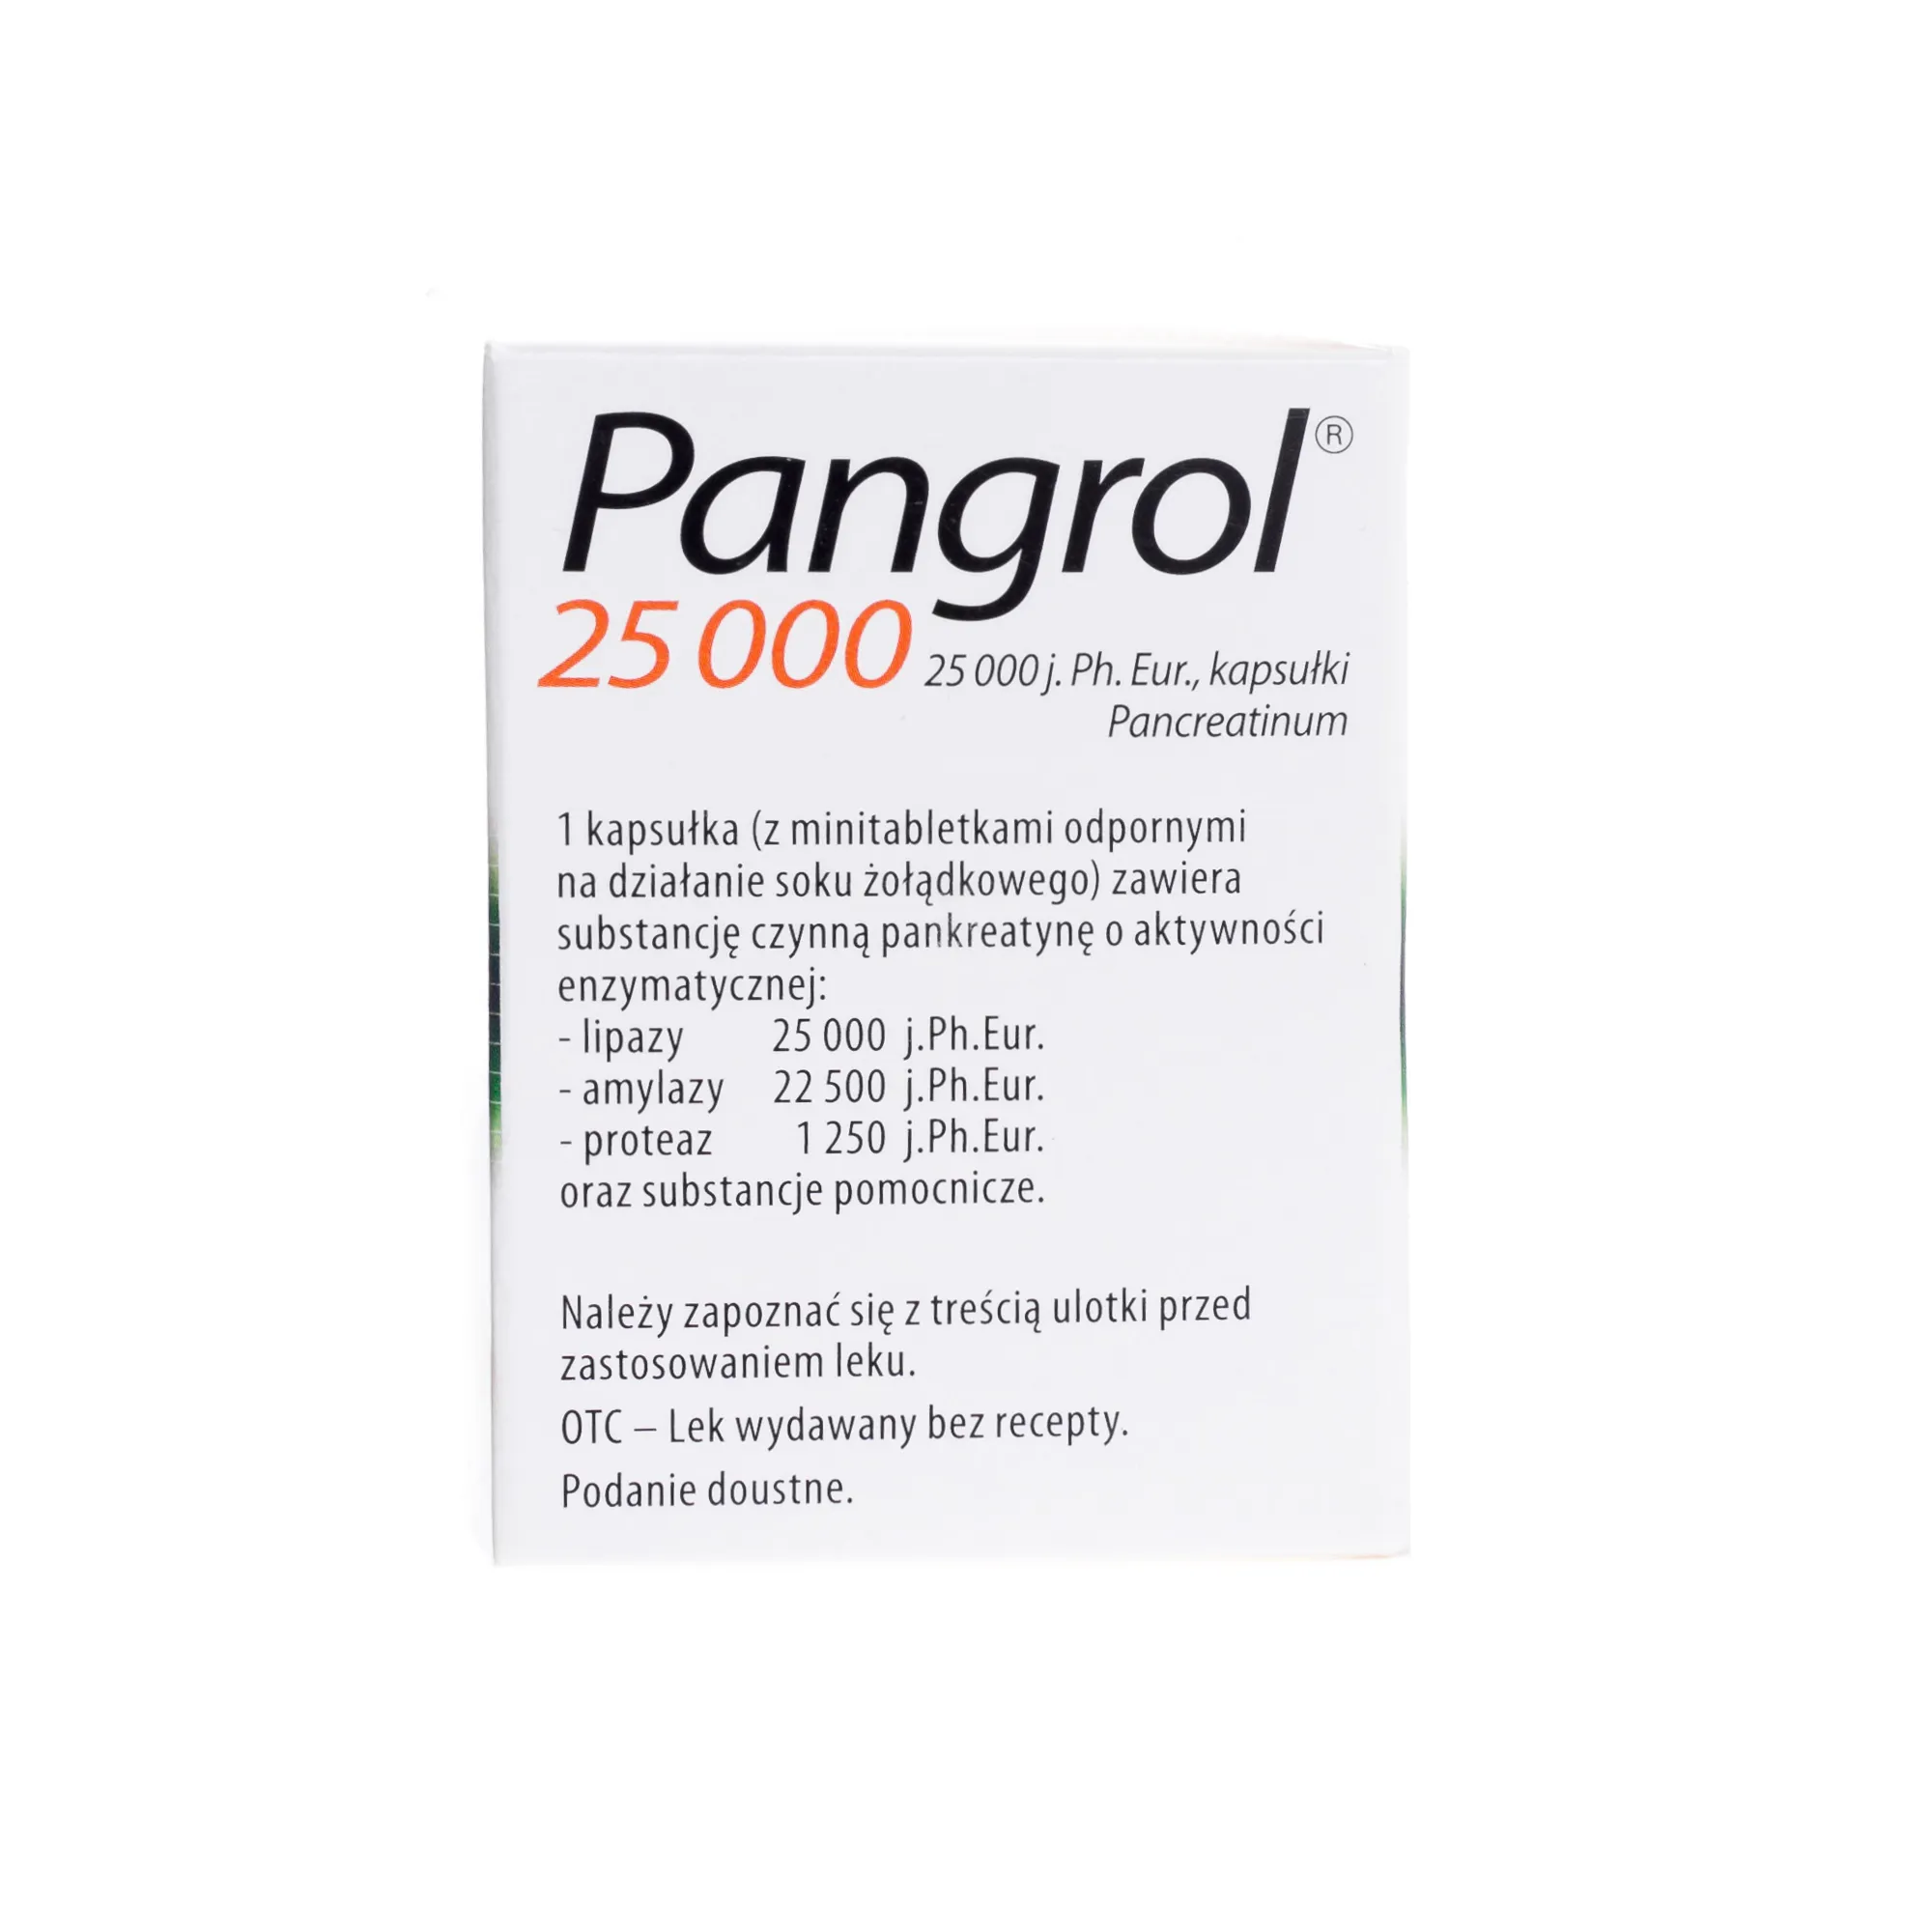 Pangrol 25 000, lek stosowany w zaburzeniach trawienia, 20 kapsułek 